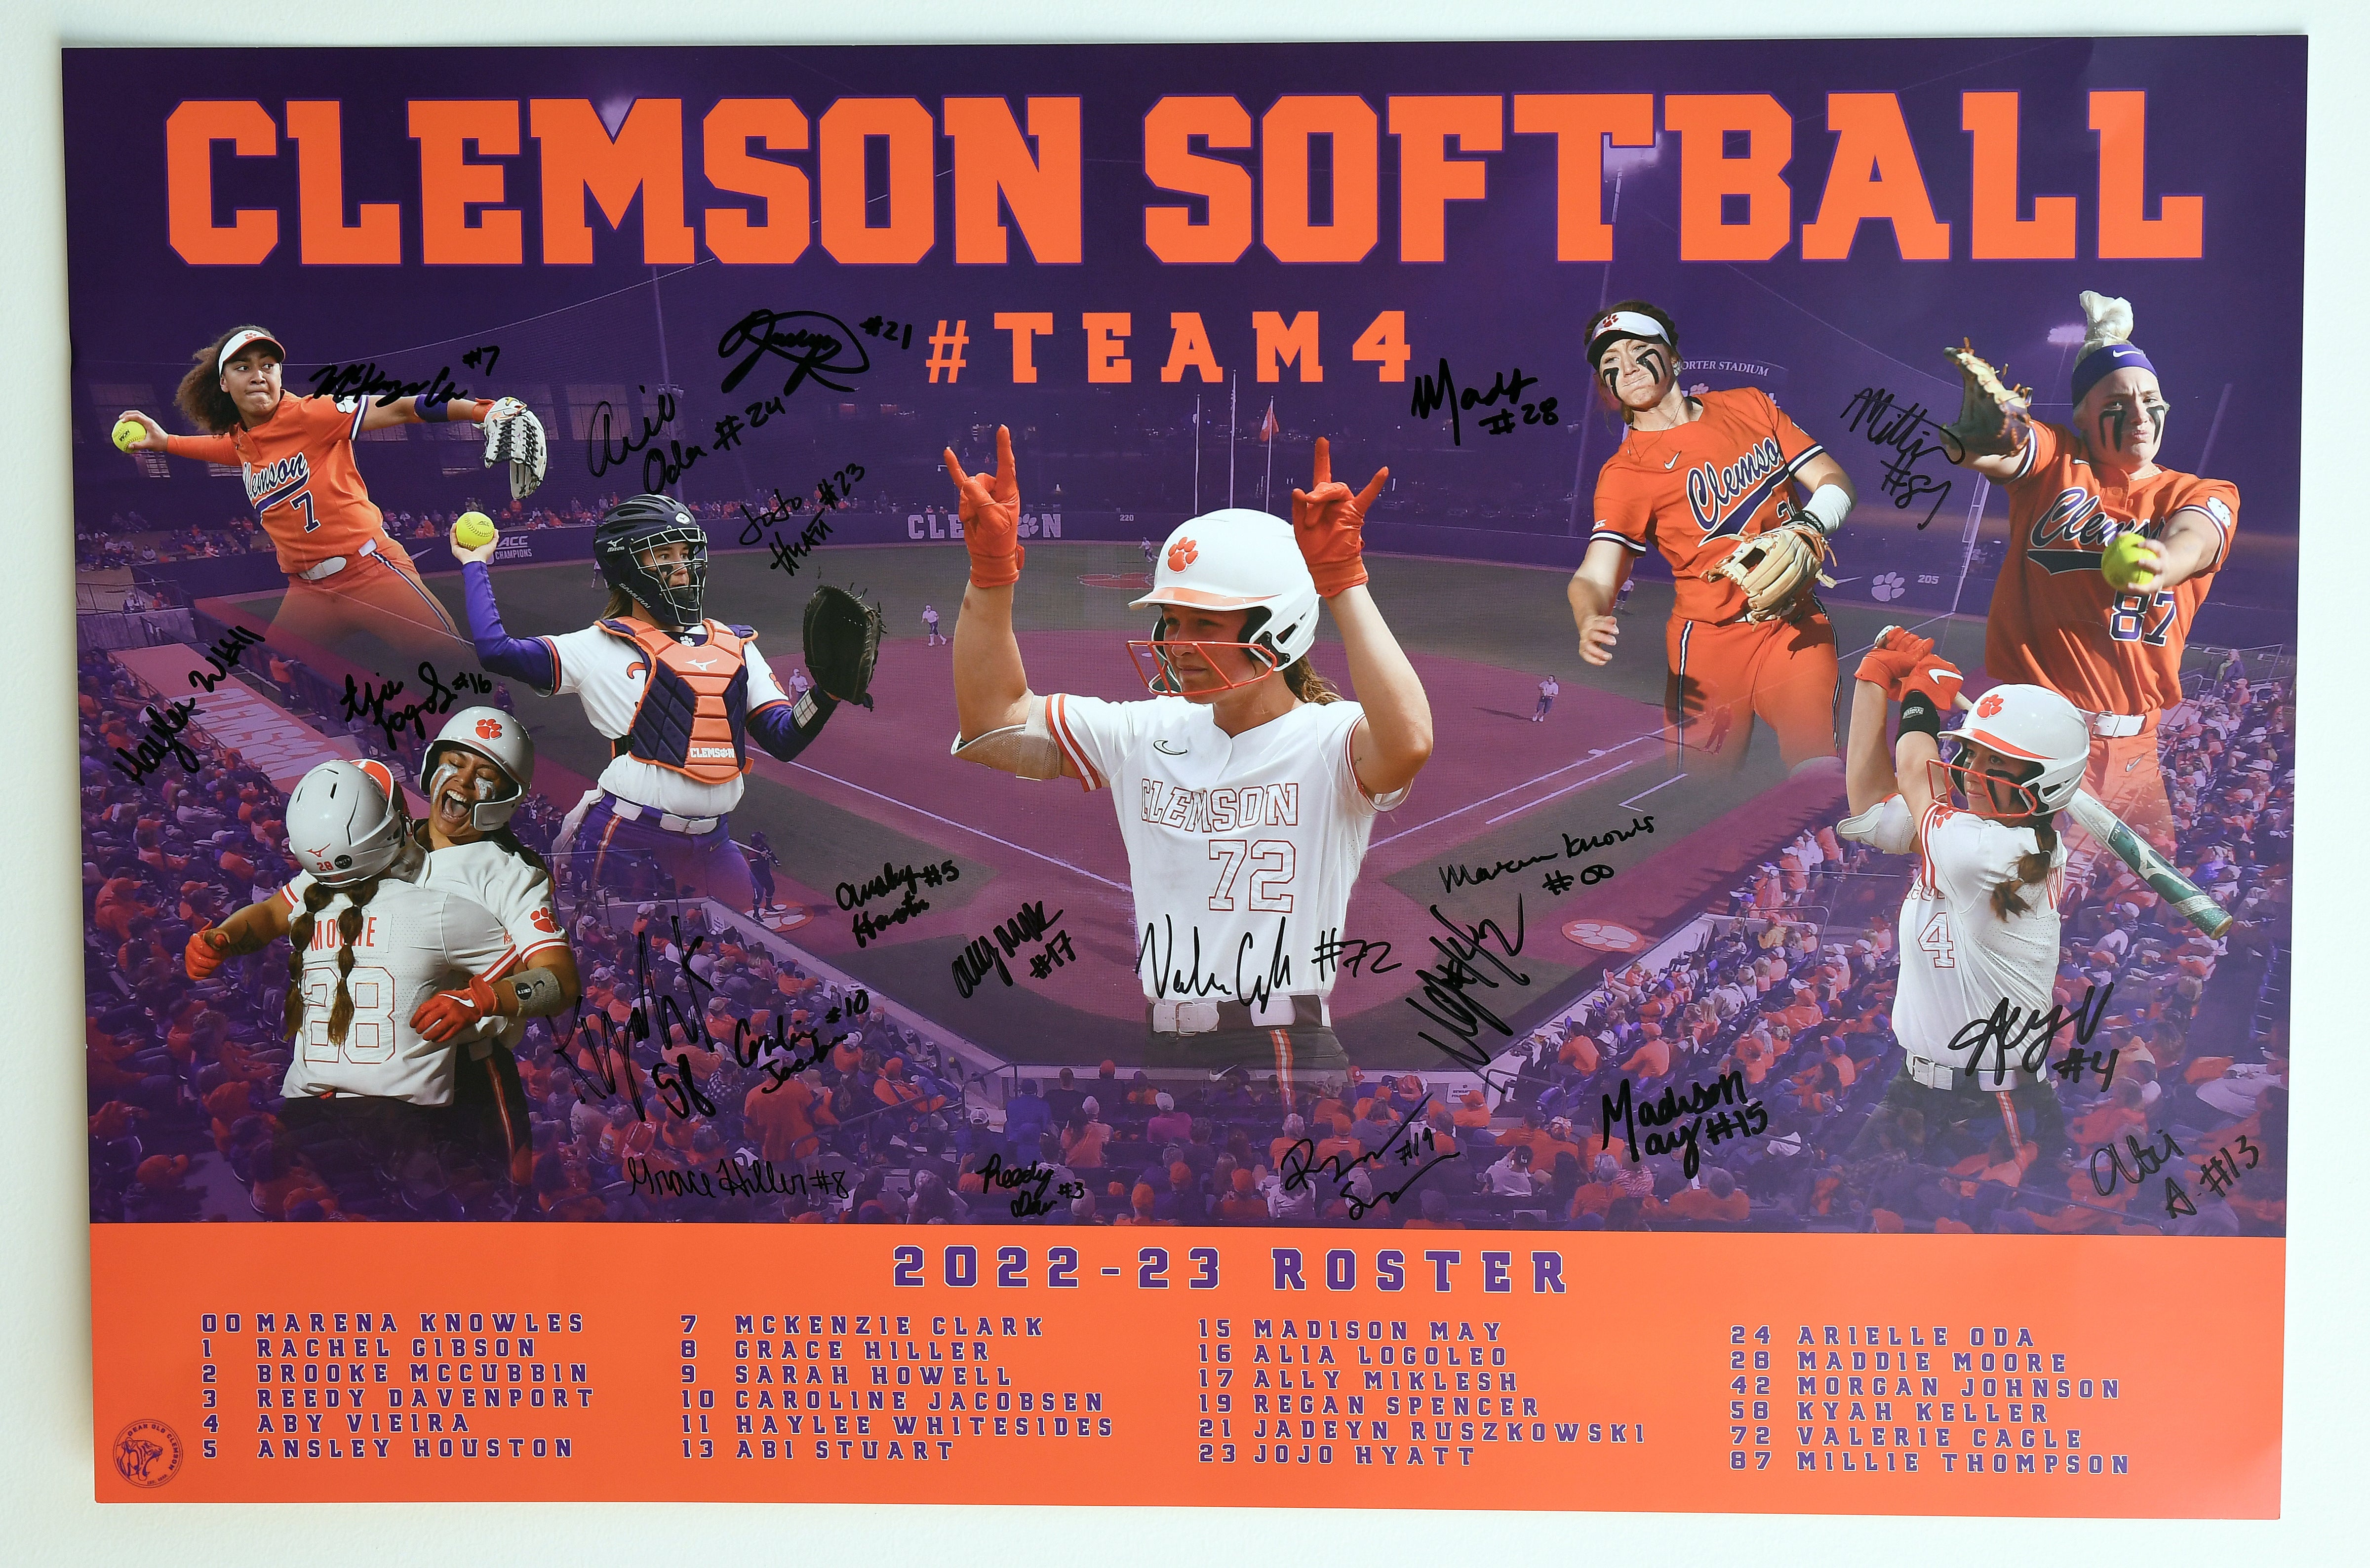 Black Friday:  Signed Poster for Clemson softball team 4 (2022-23)